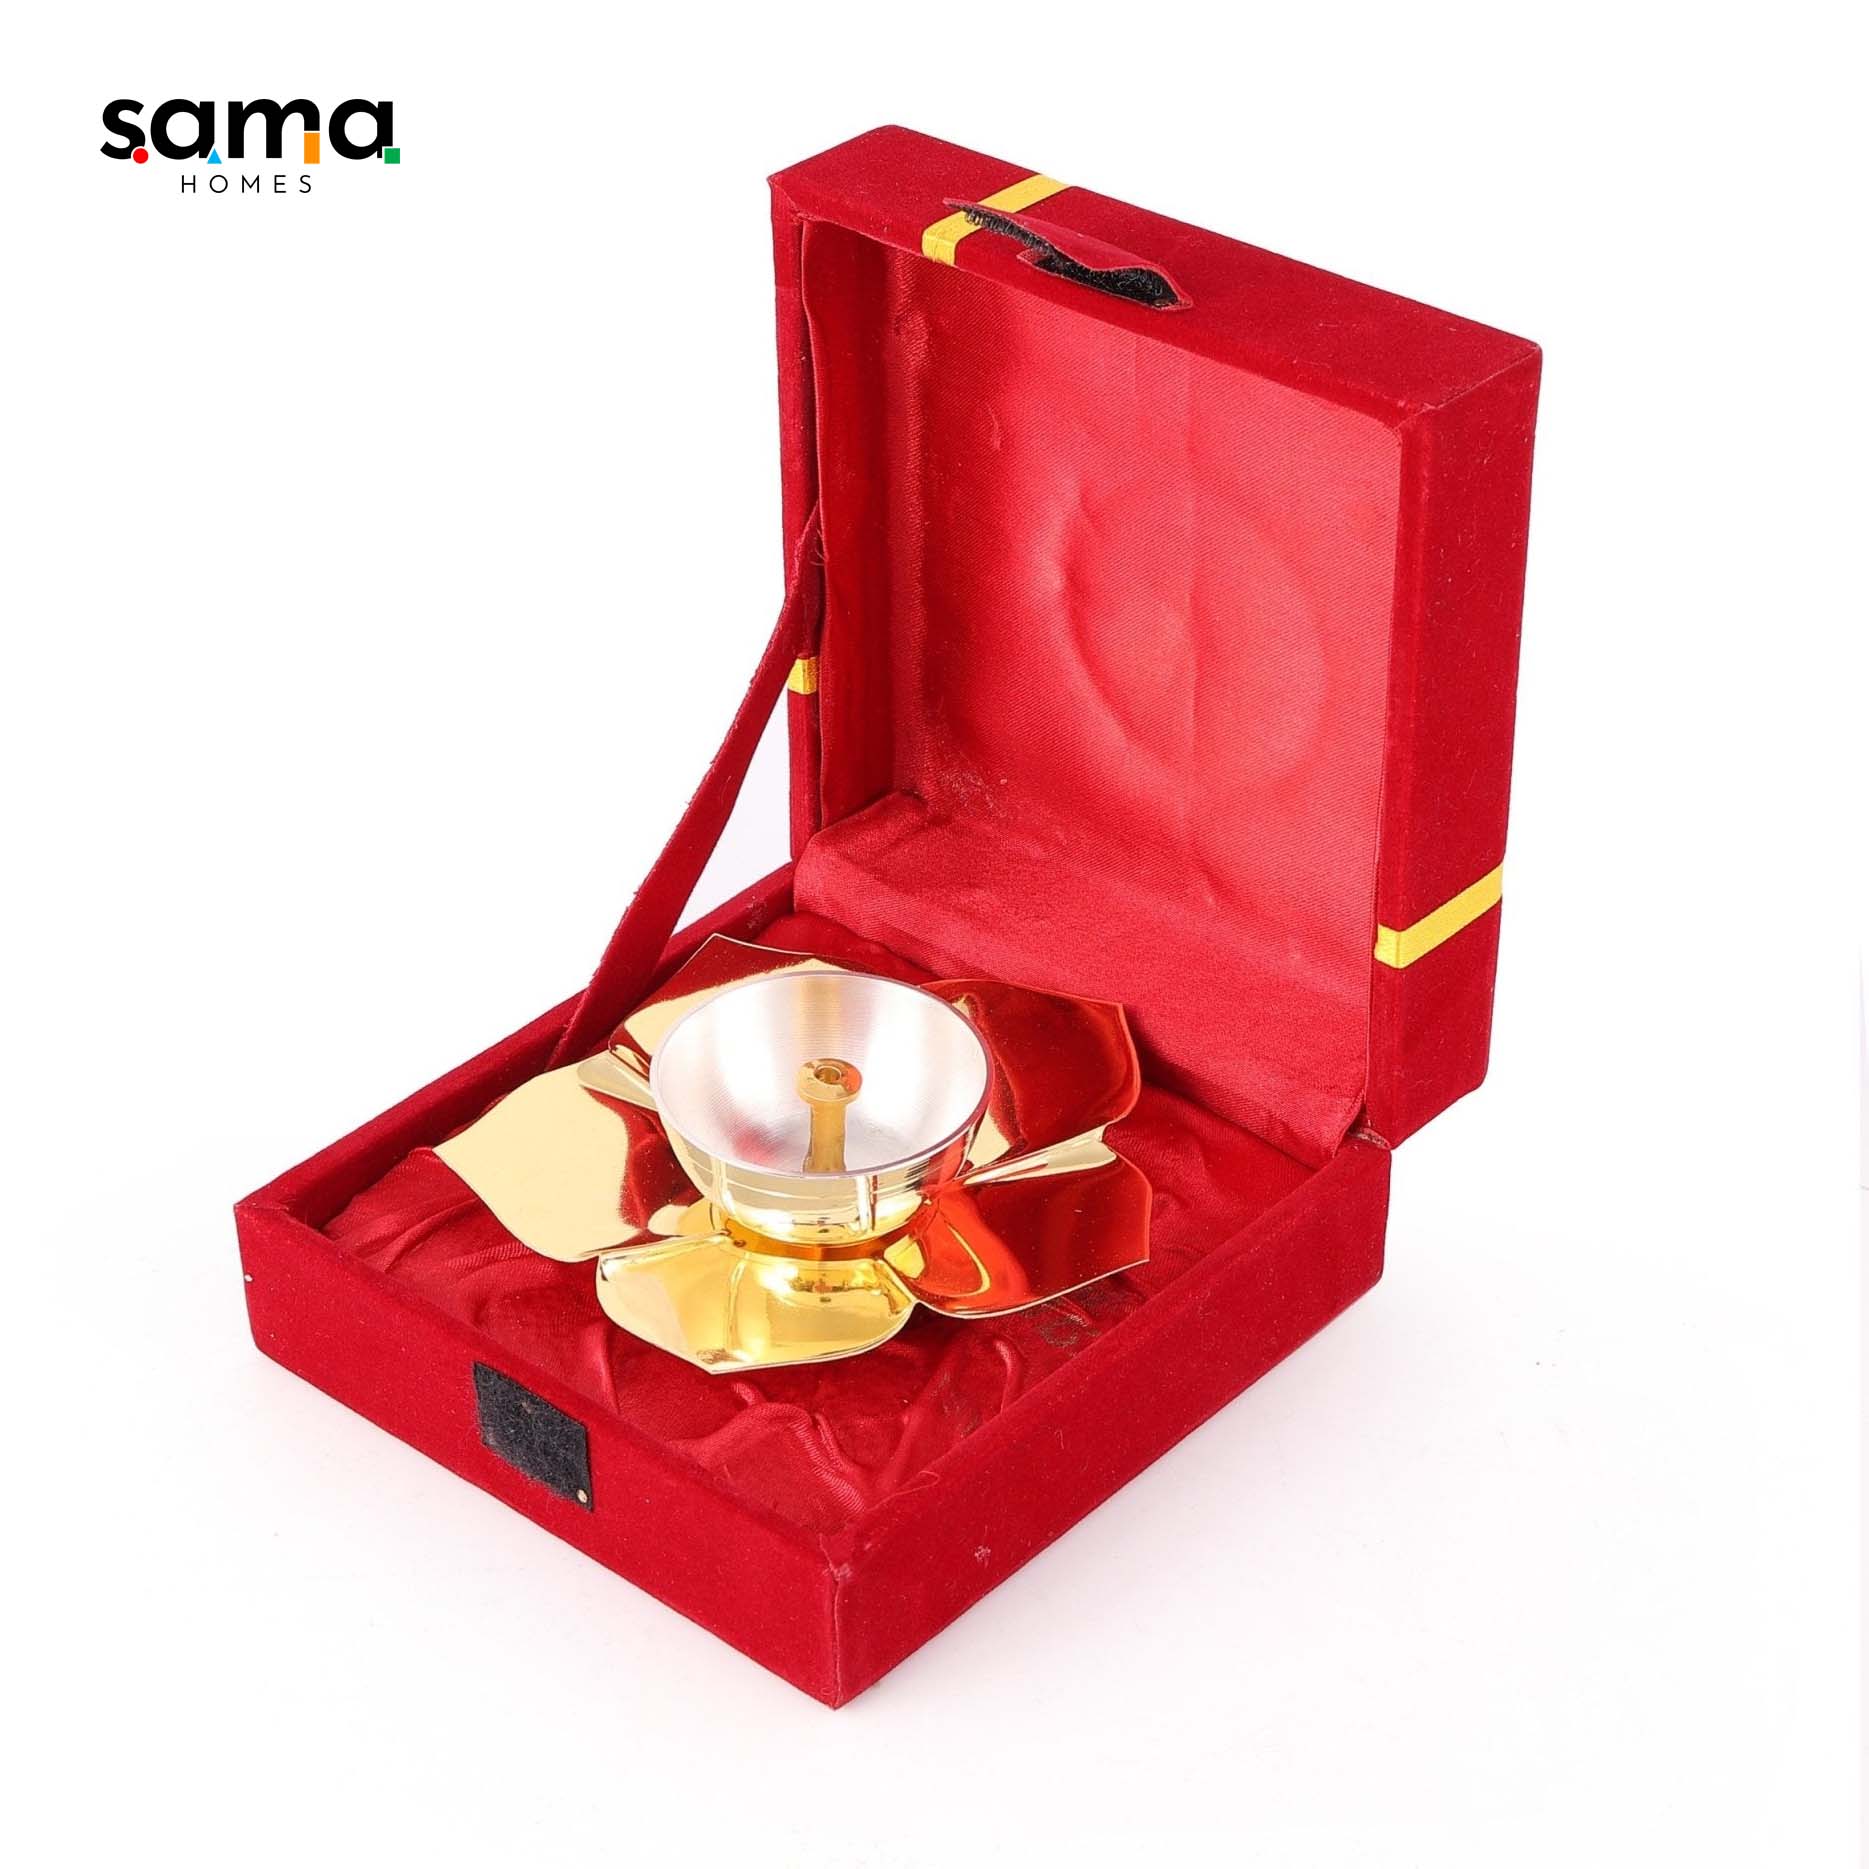 SAMA Homes - lotus deepak with velvet box